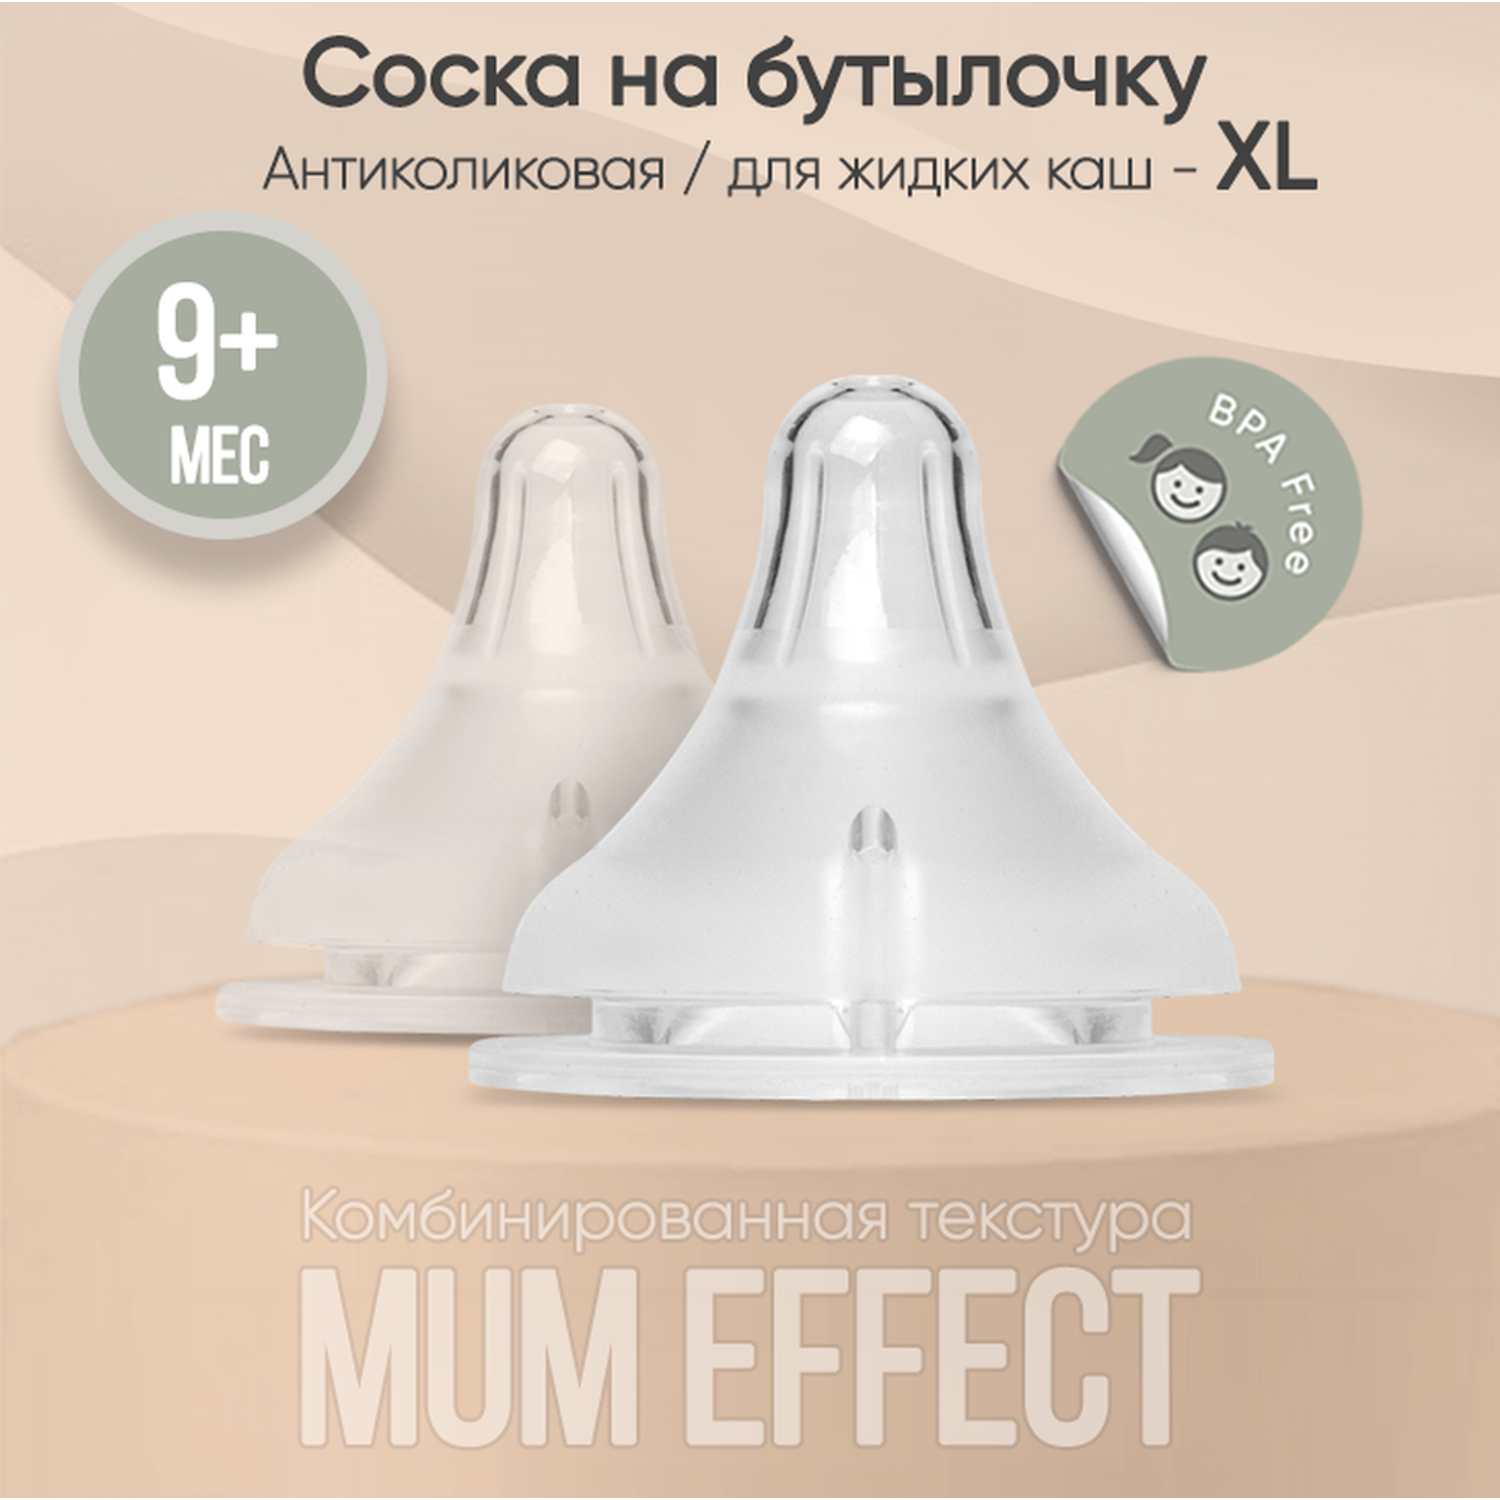 Соска для бутылочки paomma из силикона mum effect Anti-Colic XL для каш и смеси крестообразное отверстие 2шт - фото 1